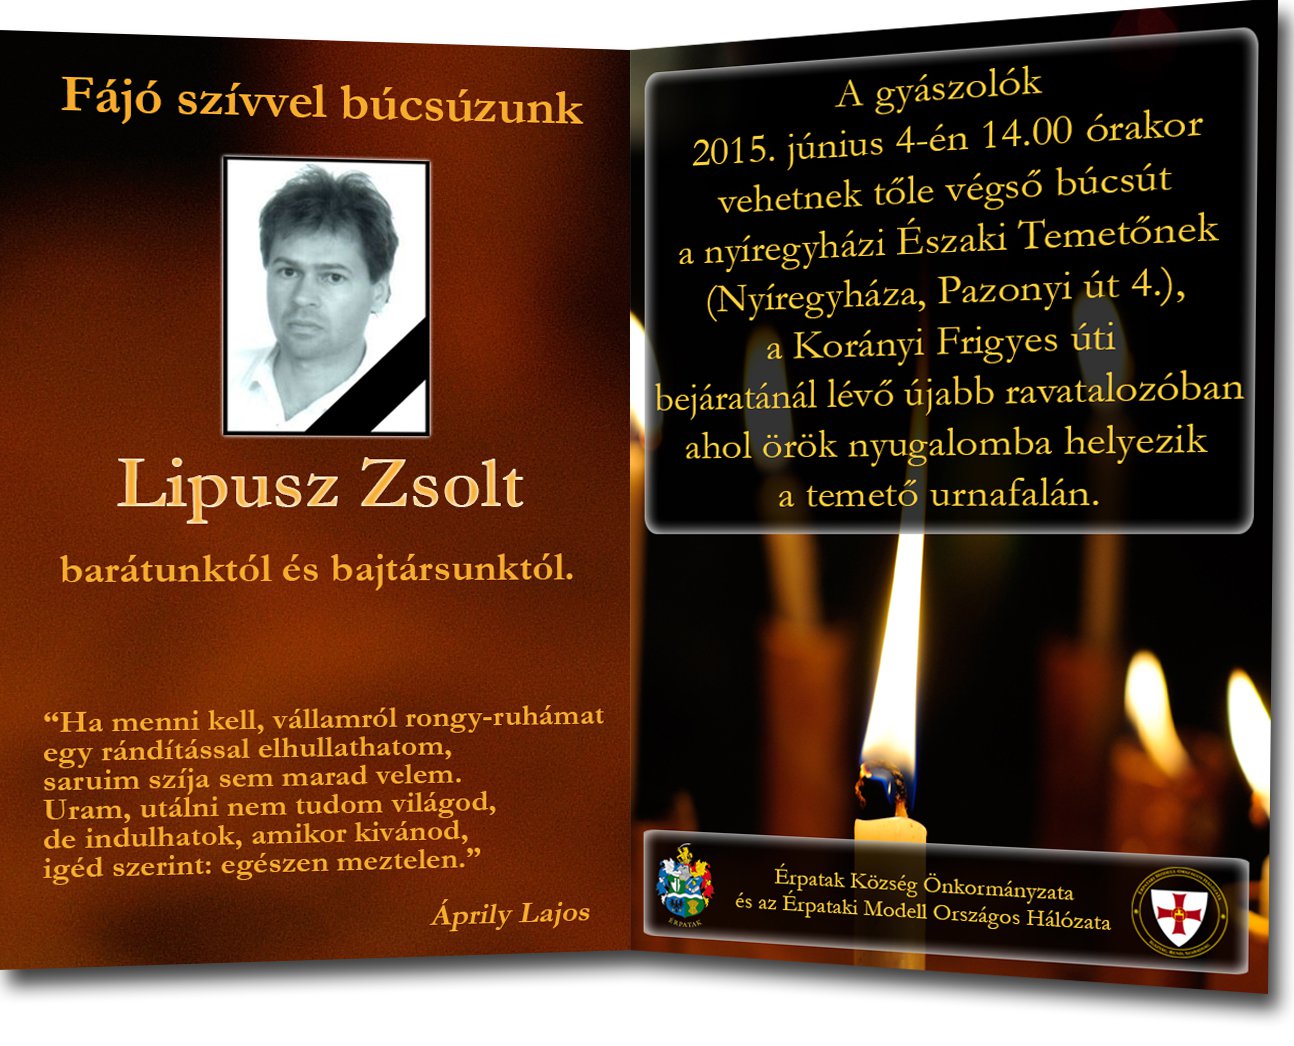 Lipusz Zsolt temetése